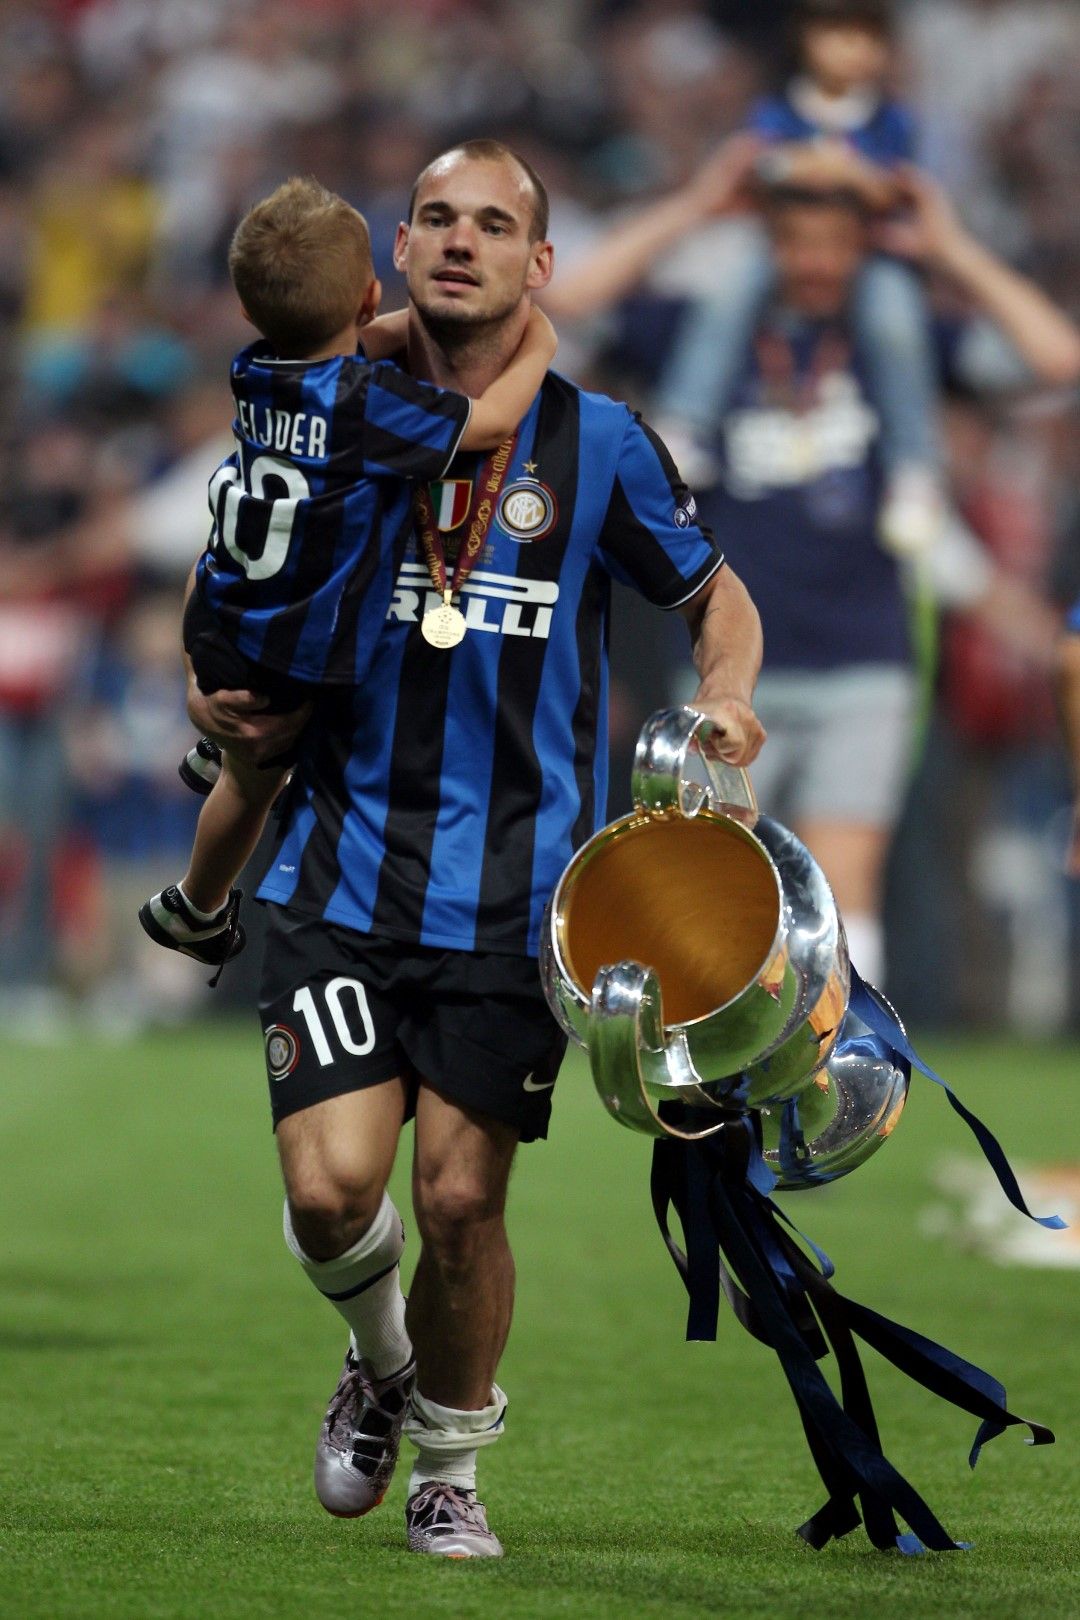 Уесли Снайдер бе играчът на сезона за Интер през 2009-2010 г. Холандецът бе сърцето на всепобеждаващия тим на Моуриньо, записал требъл в Италия и Европа. След това игра и финал на Мондиал 2010, който загуби драматично от Испания с гол в 117-ата минута.